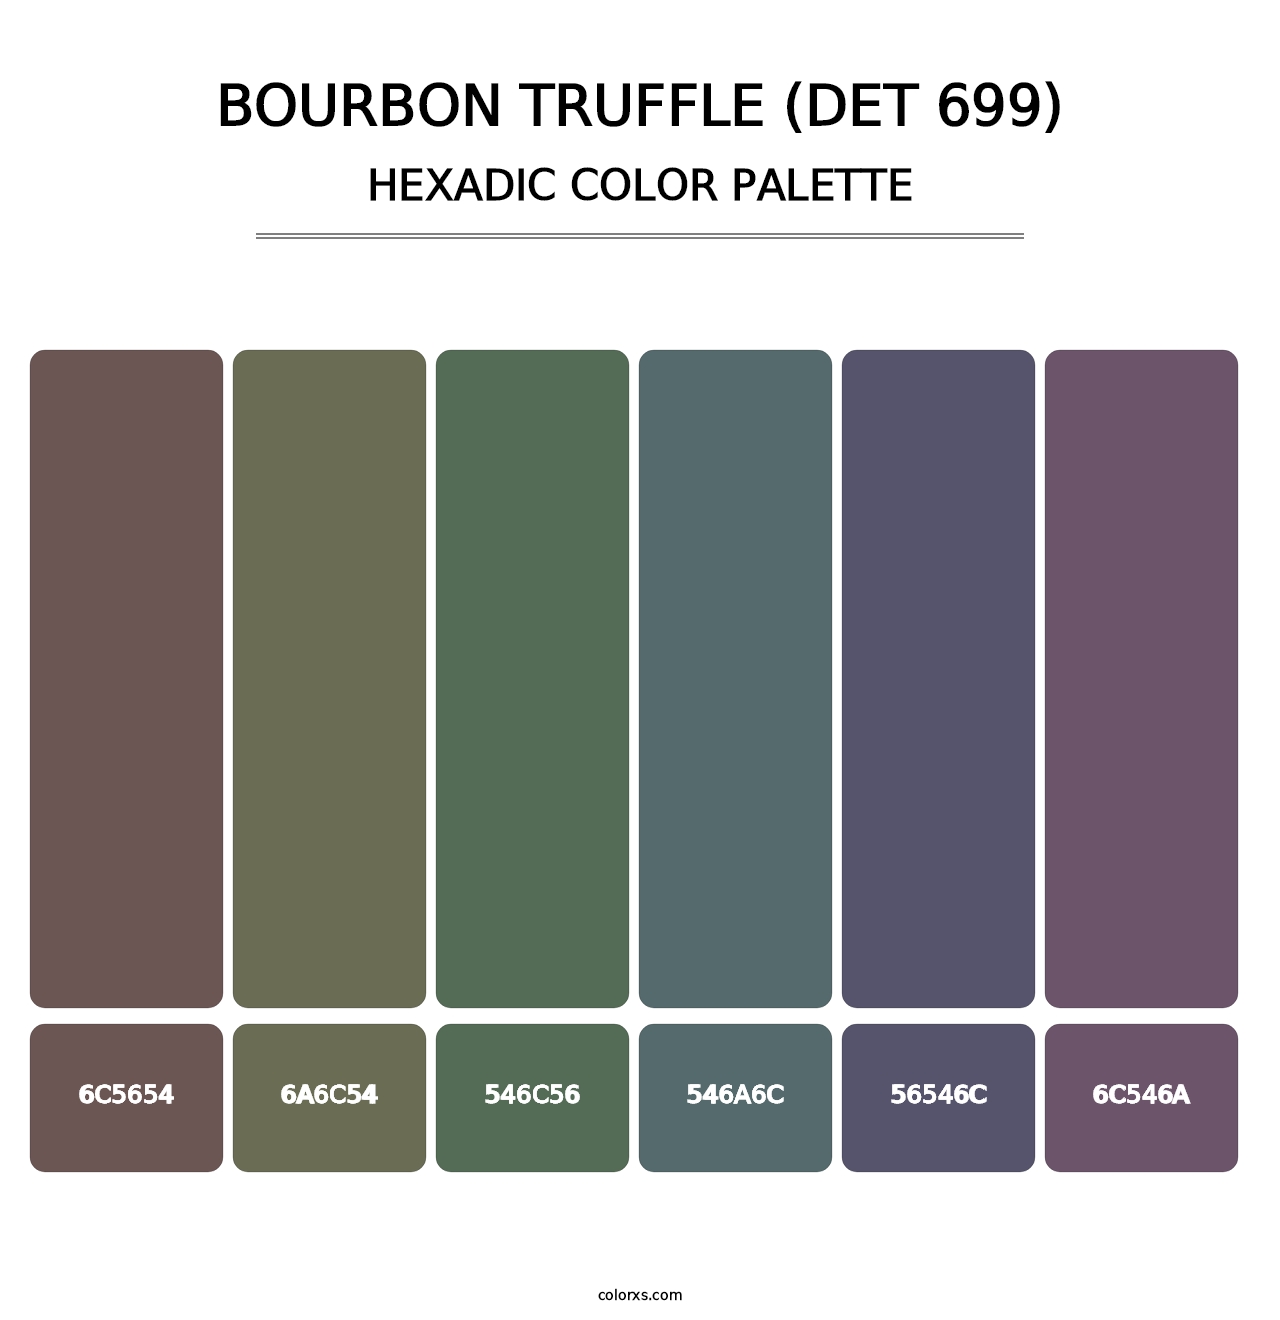 Bourbon Truffle (DET 699) - Hexadic Color Palette